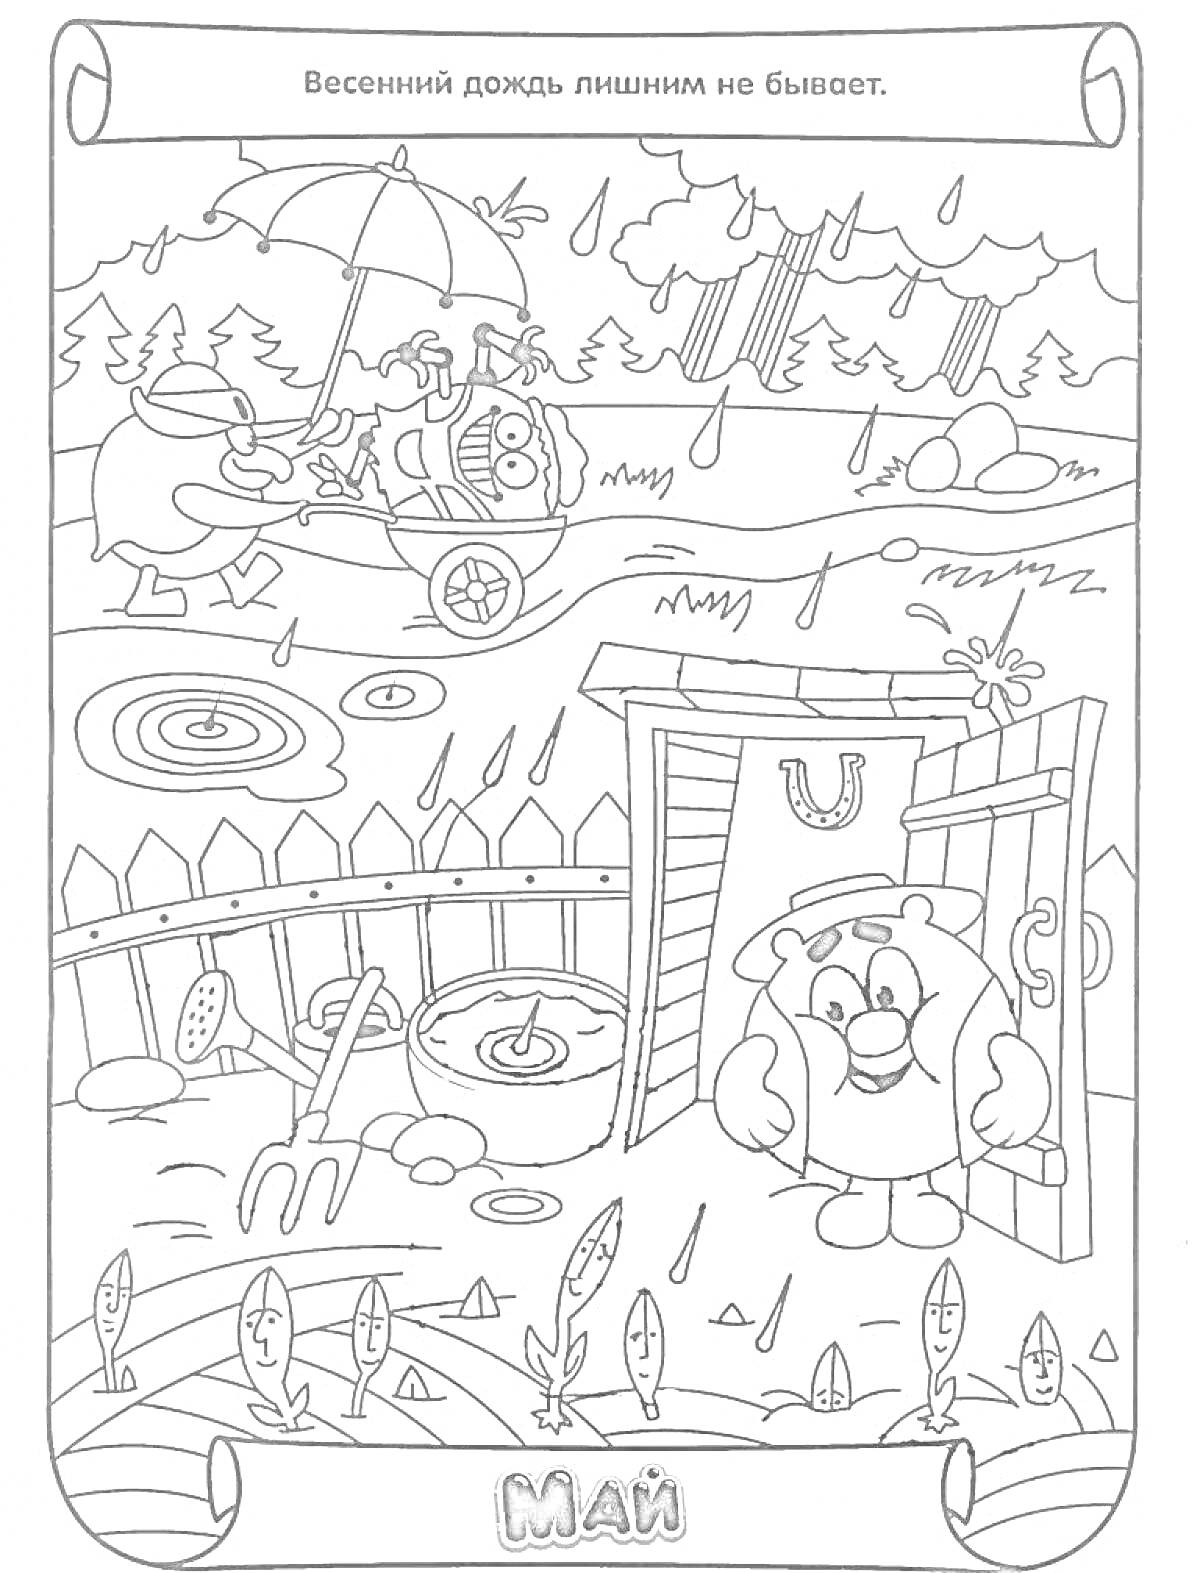  Раскраска - Май: Весенний дождь с персонажами, поливающими растения и сидящими под зонтом